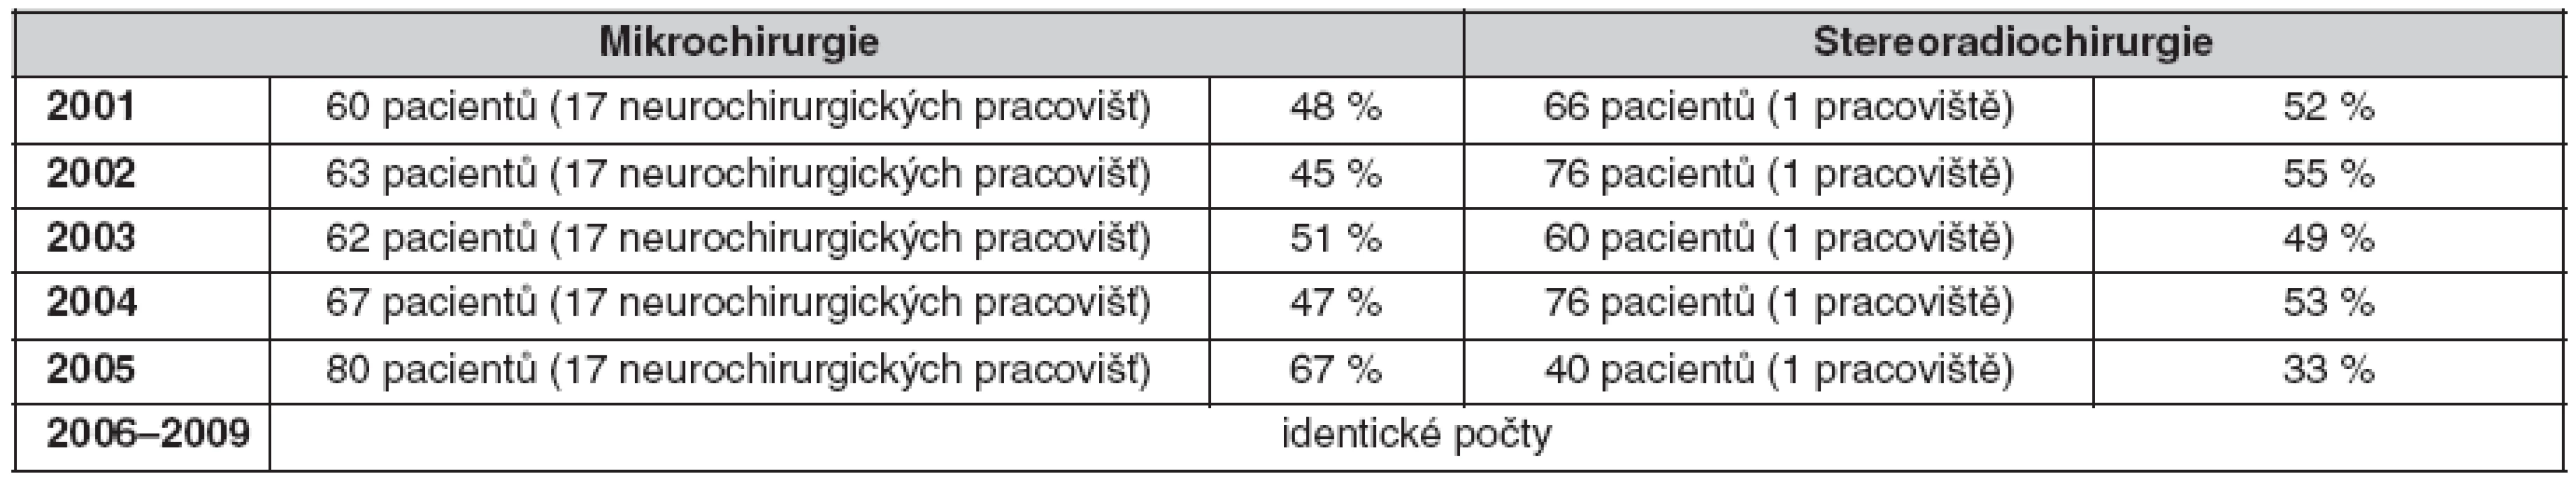 Podíl mikrochirurgie a stereoradiochirurgie (Leksellův gama nůž) na léčbě vestibulárních schwannomů v České republice v letech 2001–2008 (10 milonů obyvatel)